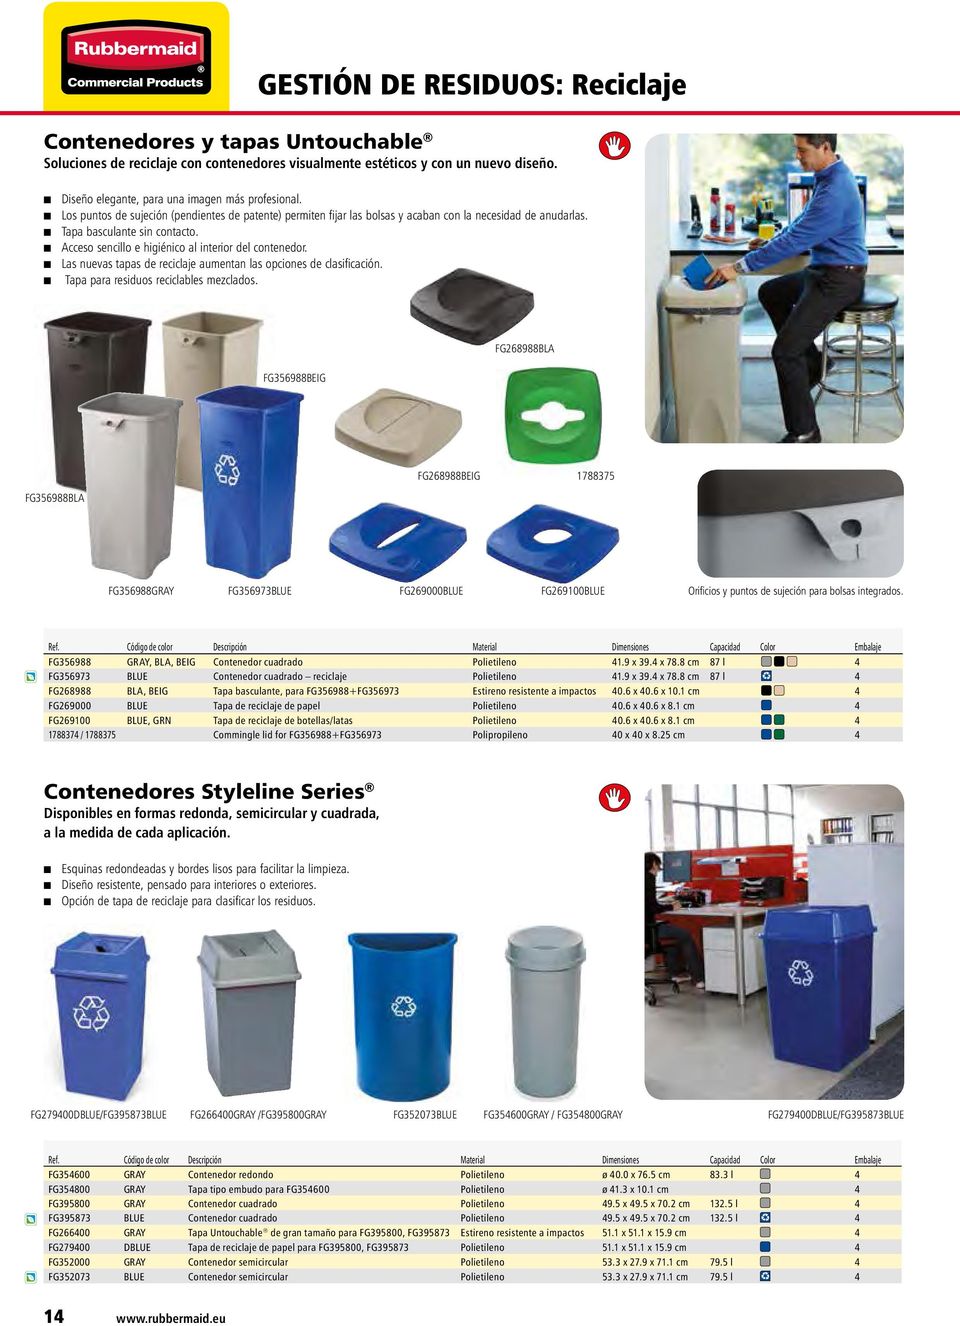 Las nuevas tapas de reciclaje aumentan las opciones de clasificación. Tapa para residuos reciclables mezclados.